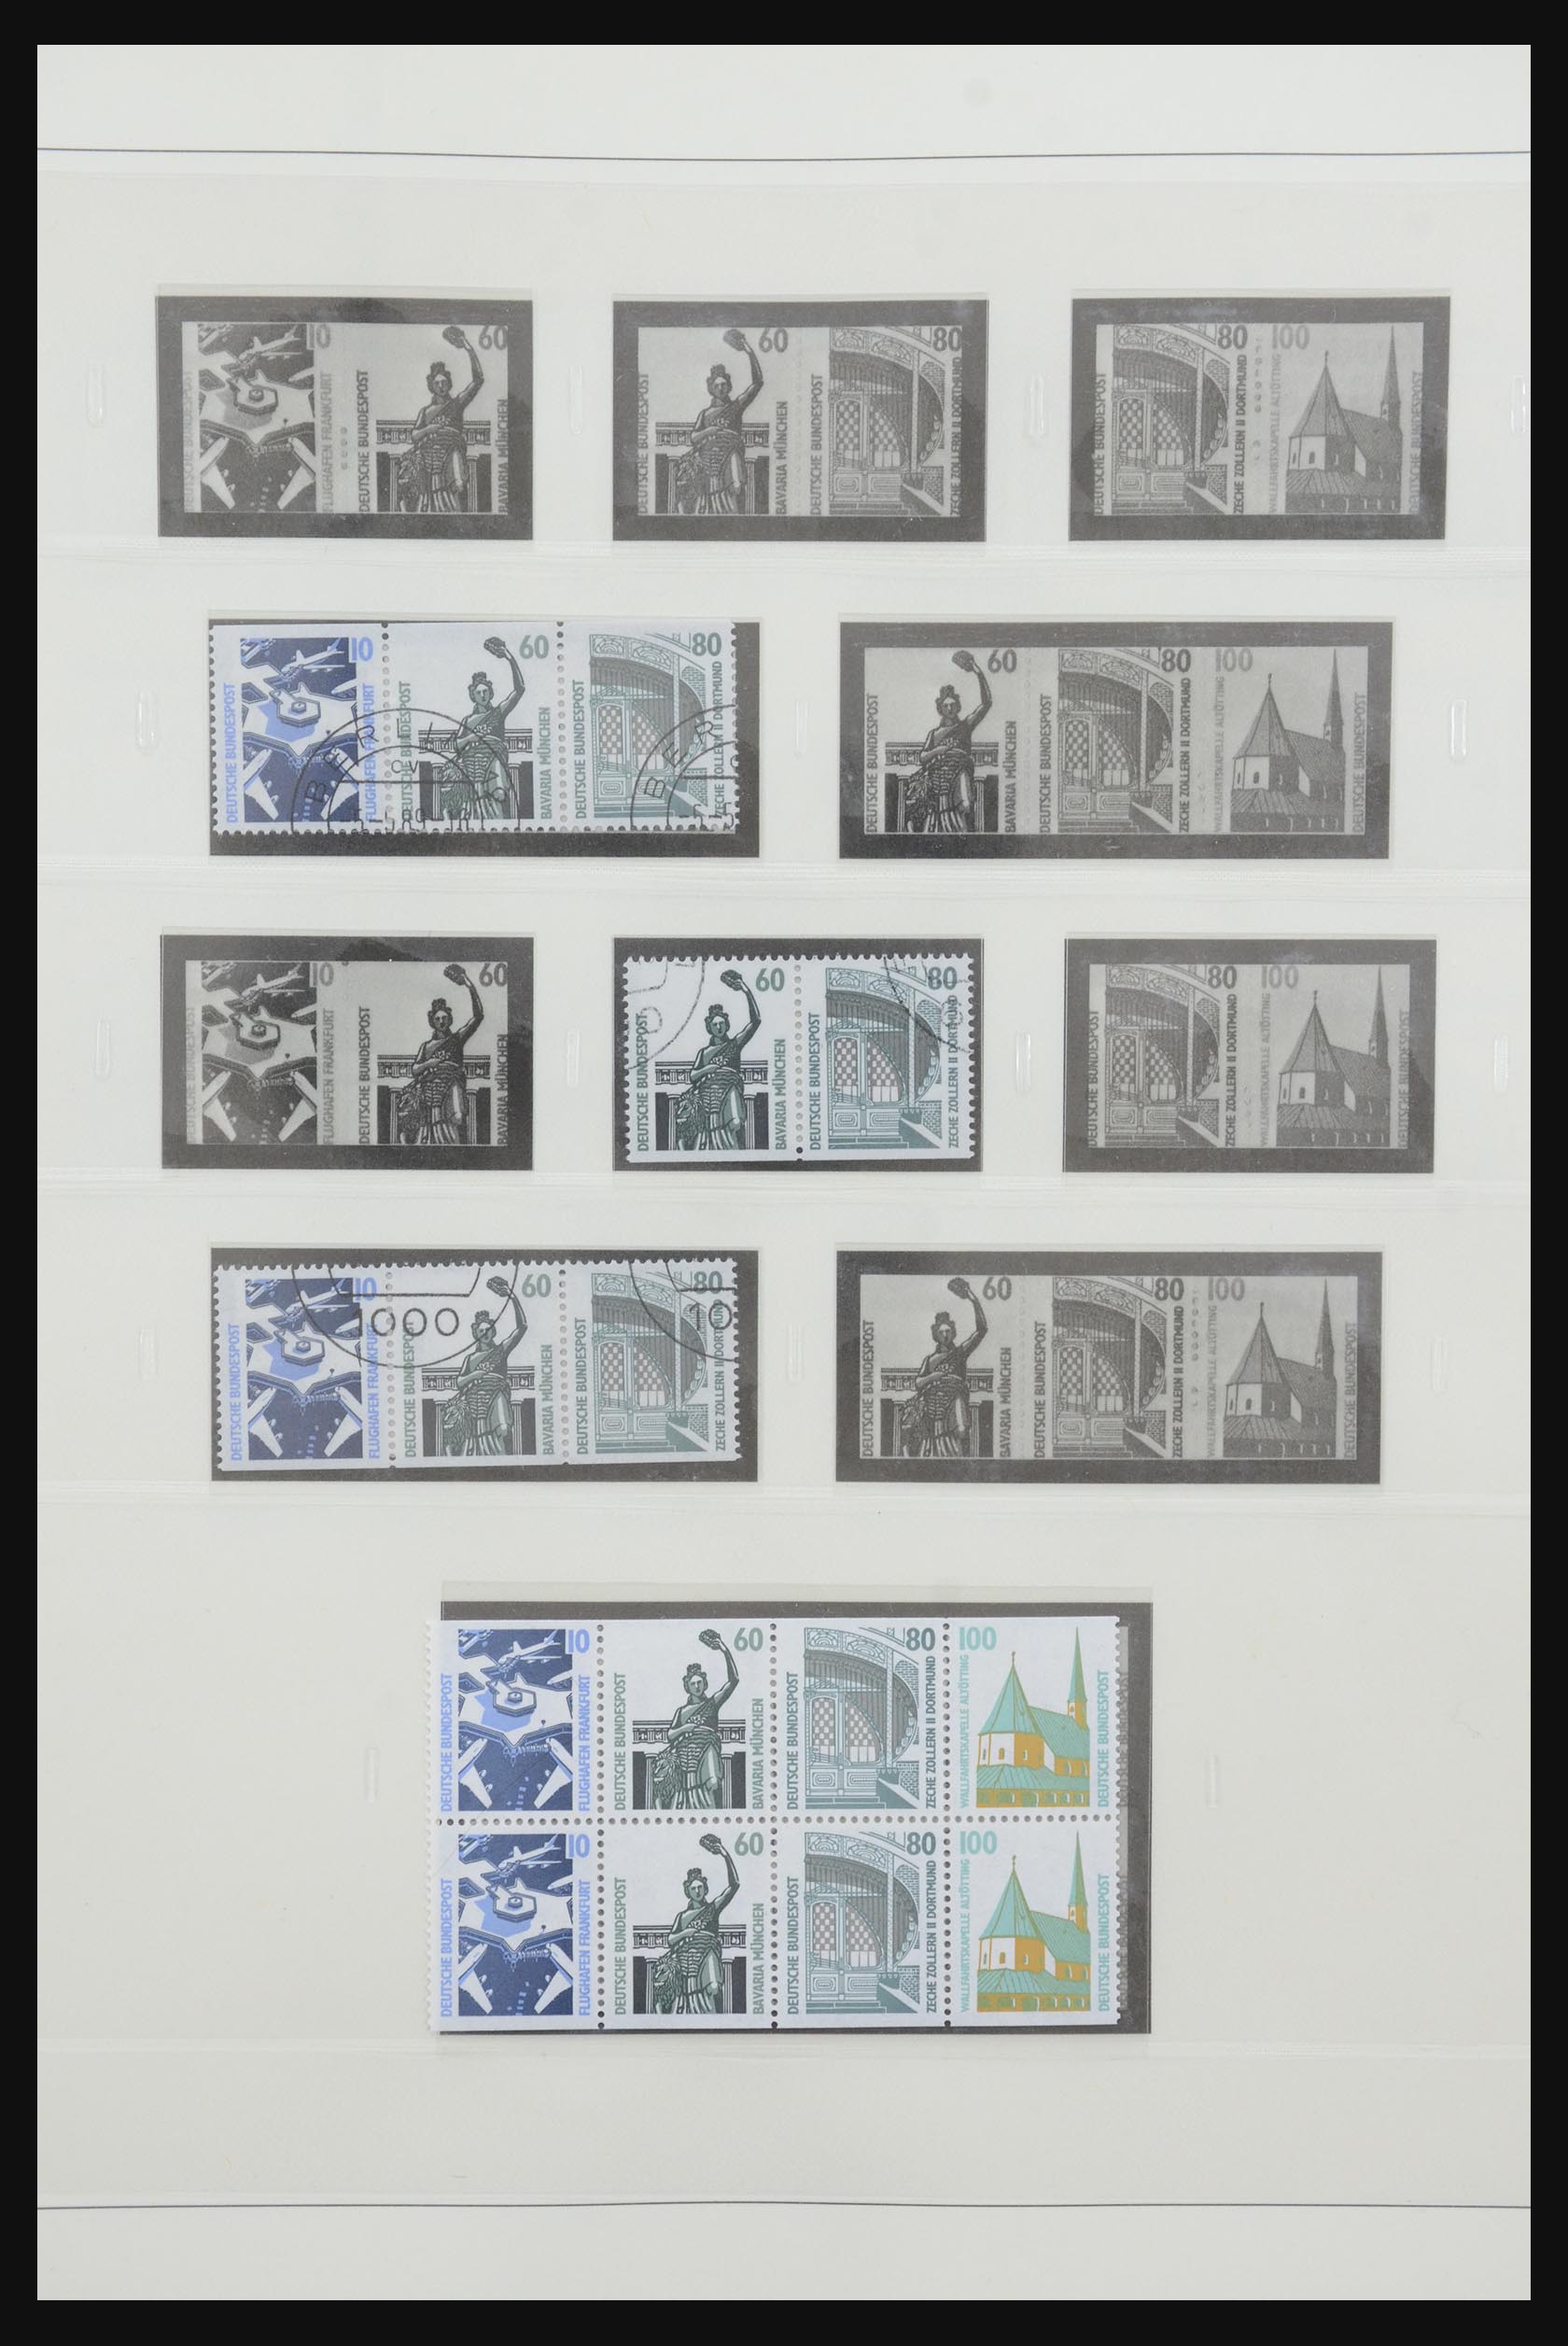 31842 070 - 31842 Bundespost combinaties 1951-2003.